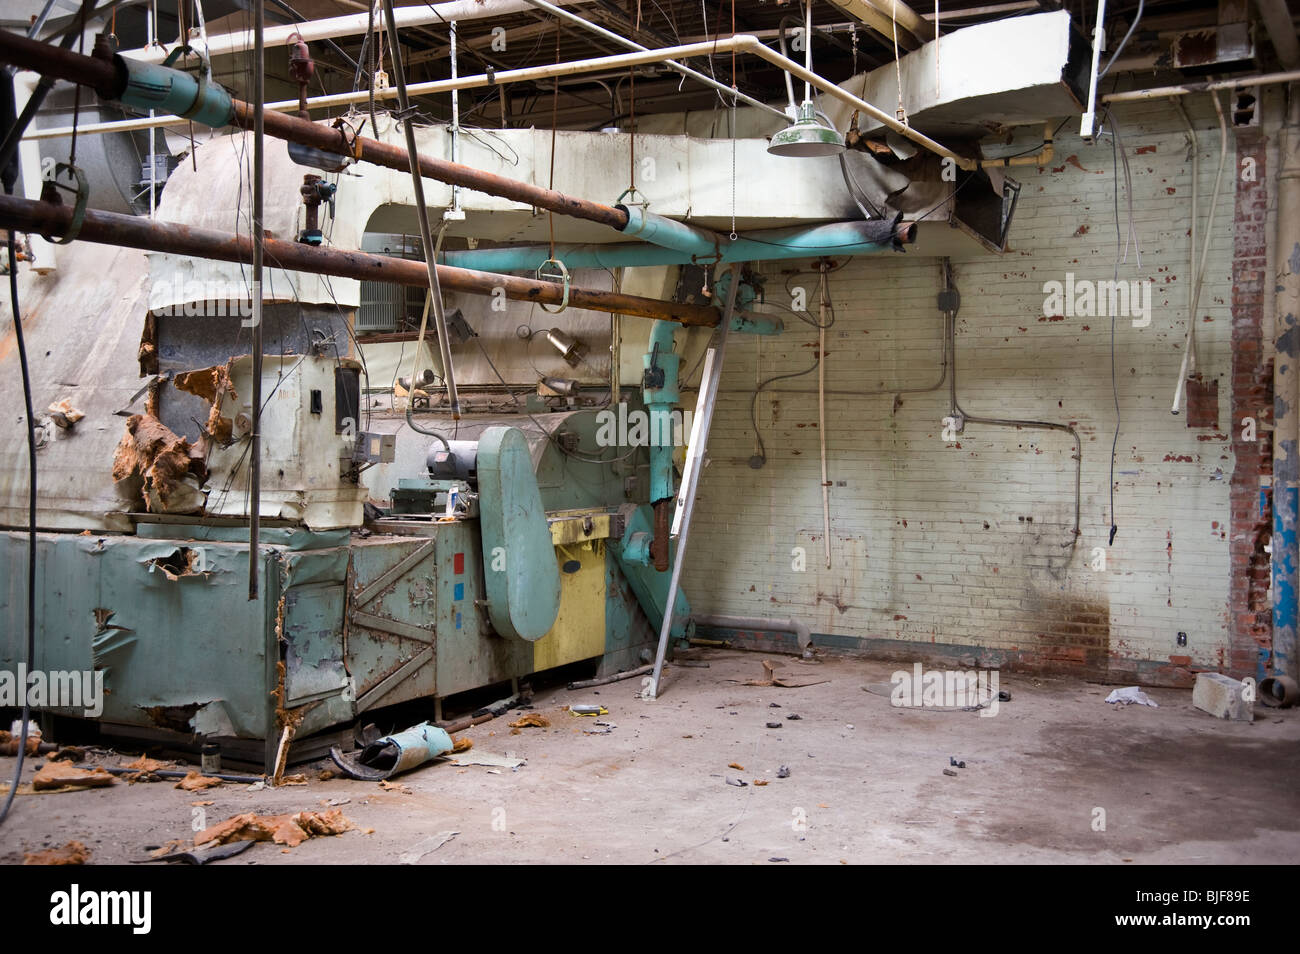 Vecchia macchina rotti in fabbrica abbandonata, Philadelphia, Stati Uniti d'America Foto Stock